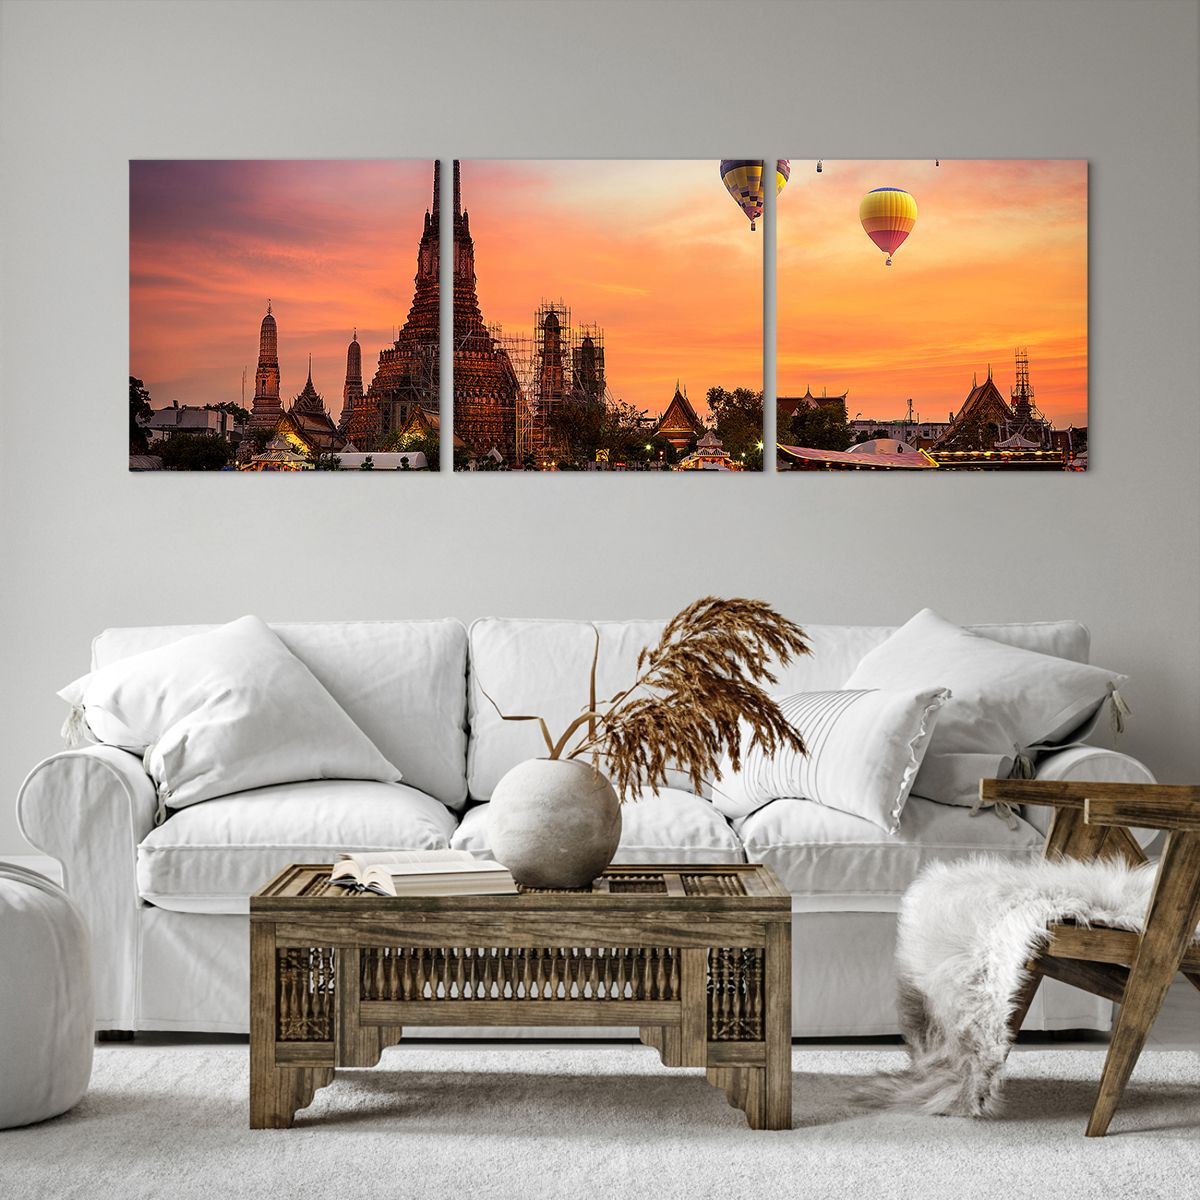 Bild auf Leinwand Bangkok, Bild auf Leinwand Tempel Der Morgenröte, Bild auf Leinwand Thailand, Bild auf Leinwand Luftballons, Bild auf Leinwand Asien